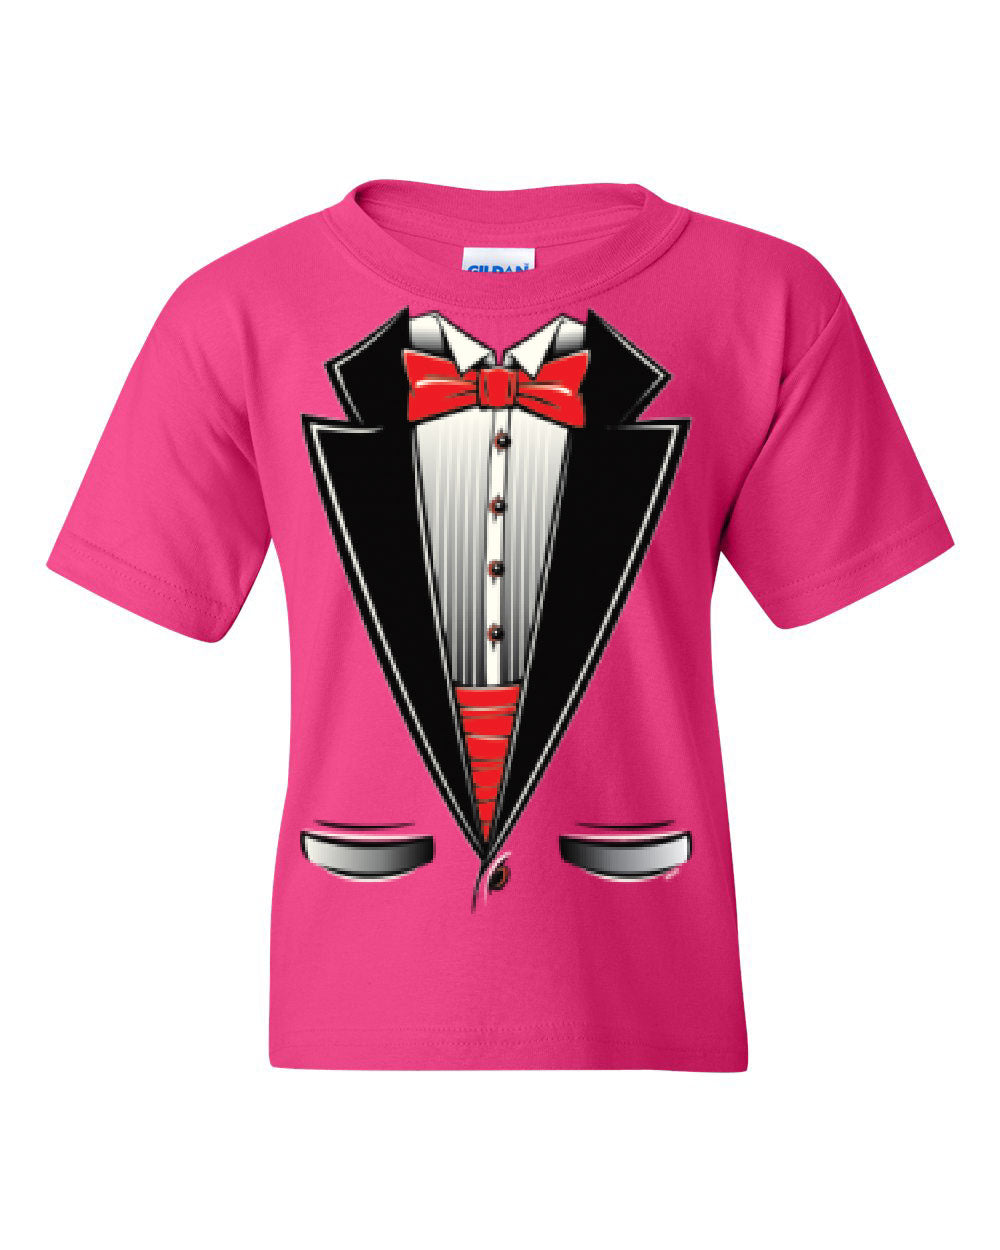 Funny Tuxedo Bow Tie Youth T-Shirt Tux Wedding Party Tee | eBay